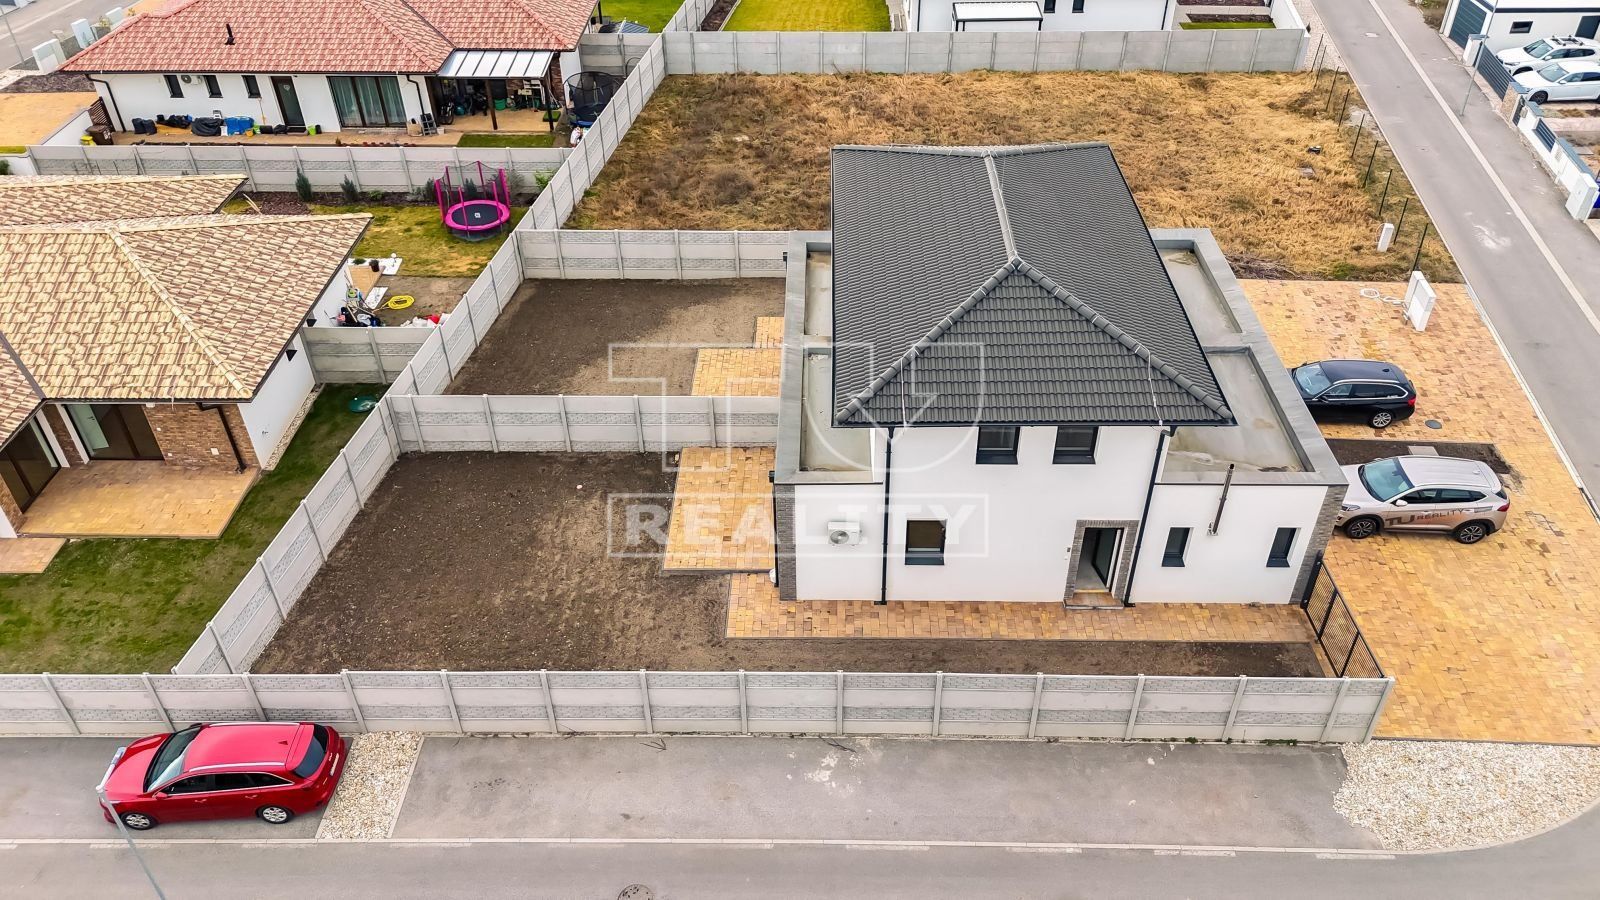 TUreality ponúka na predaj rodinný dom s dvomi bytovými jednotkami so záhradou - novostavba, Miloslavov časť Alžbetin Dvor